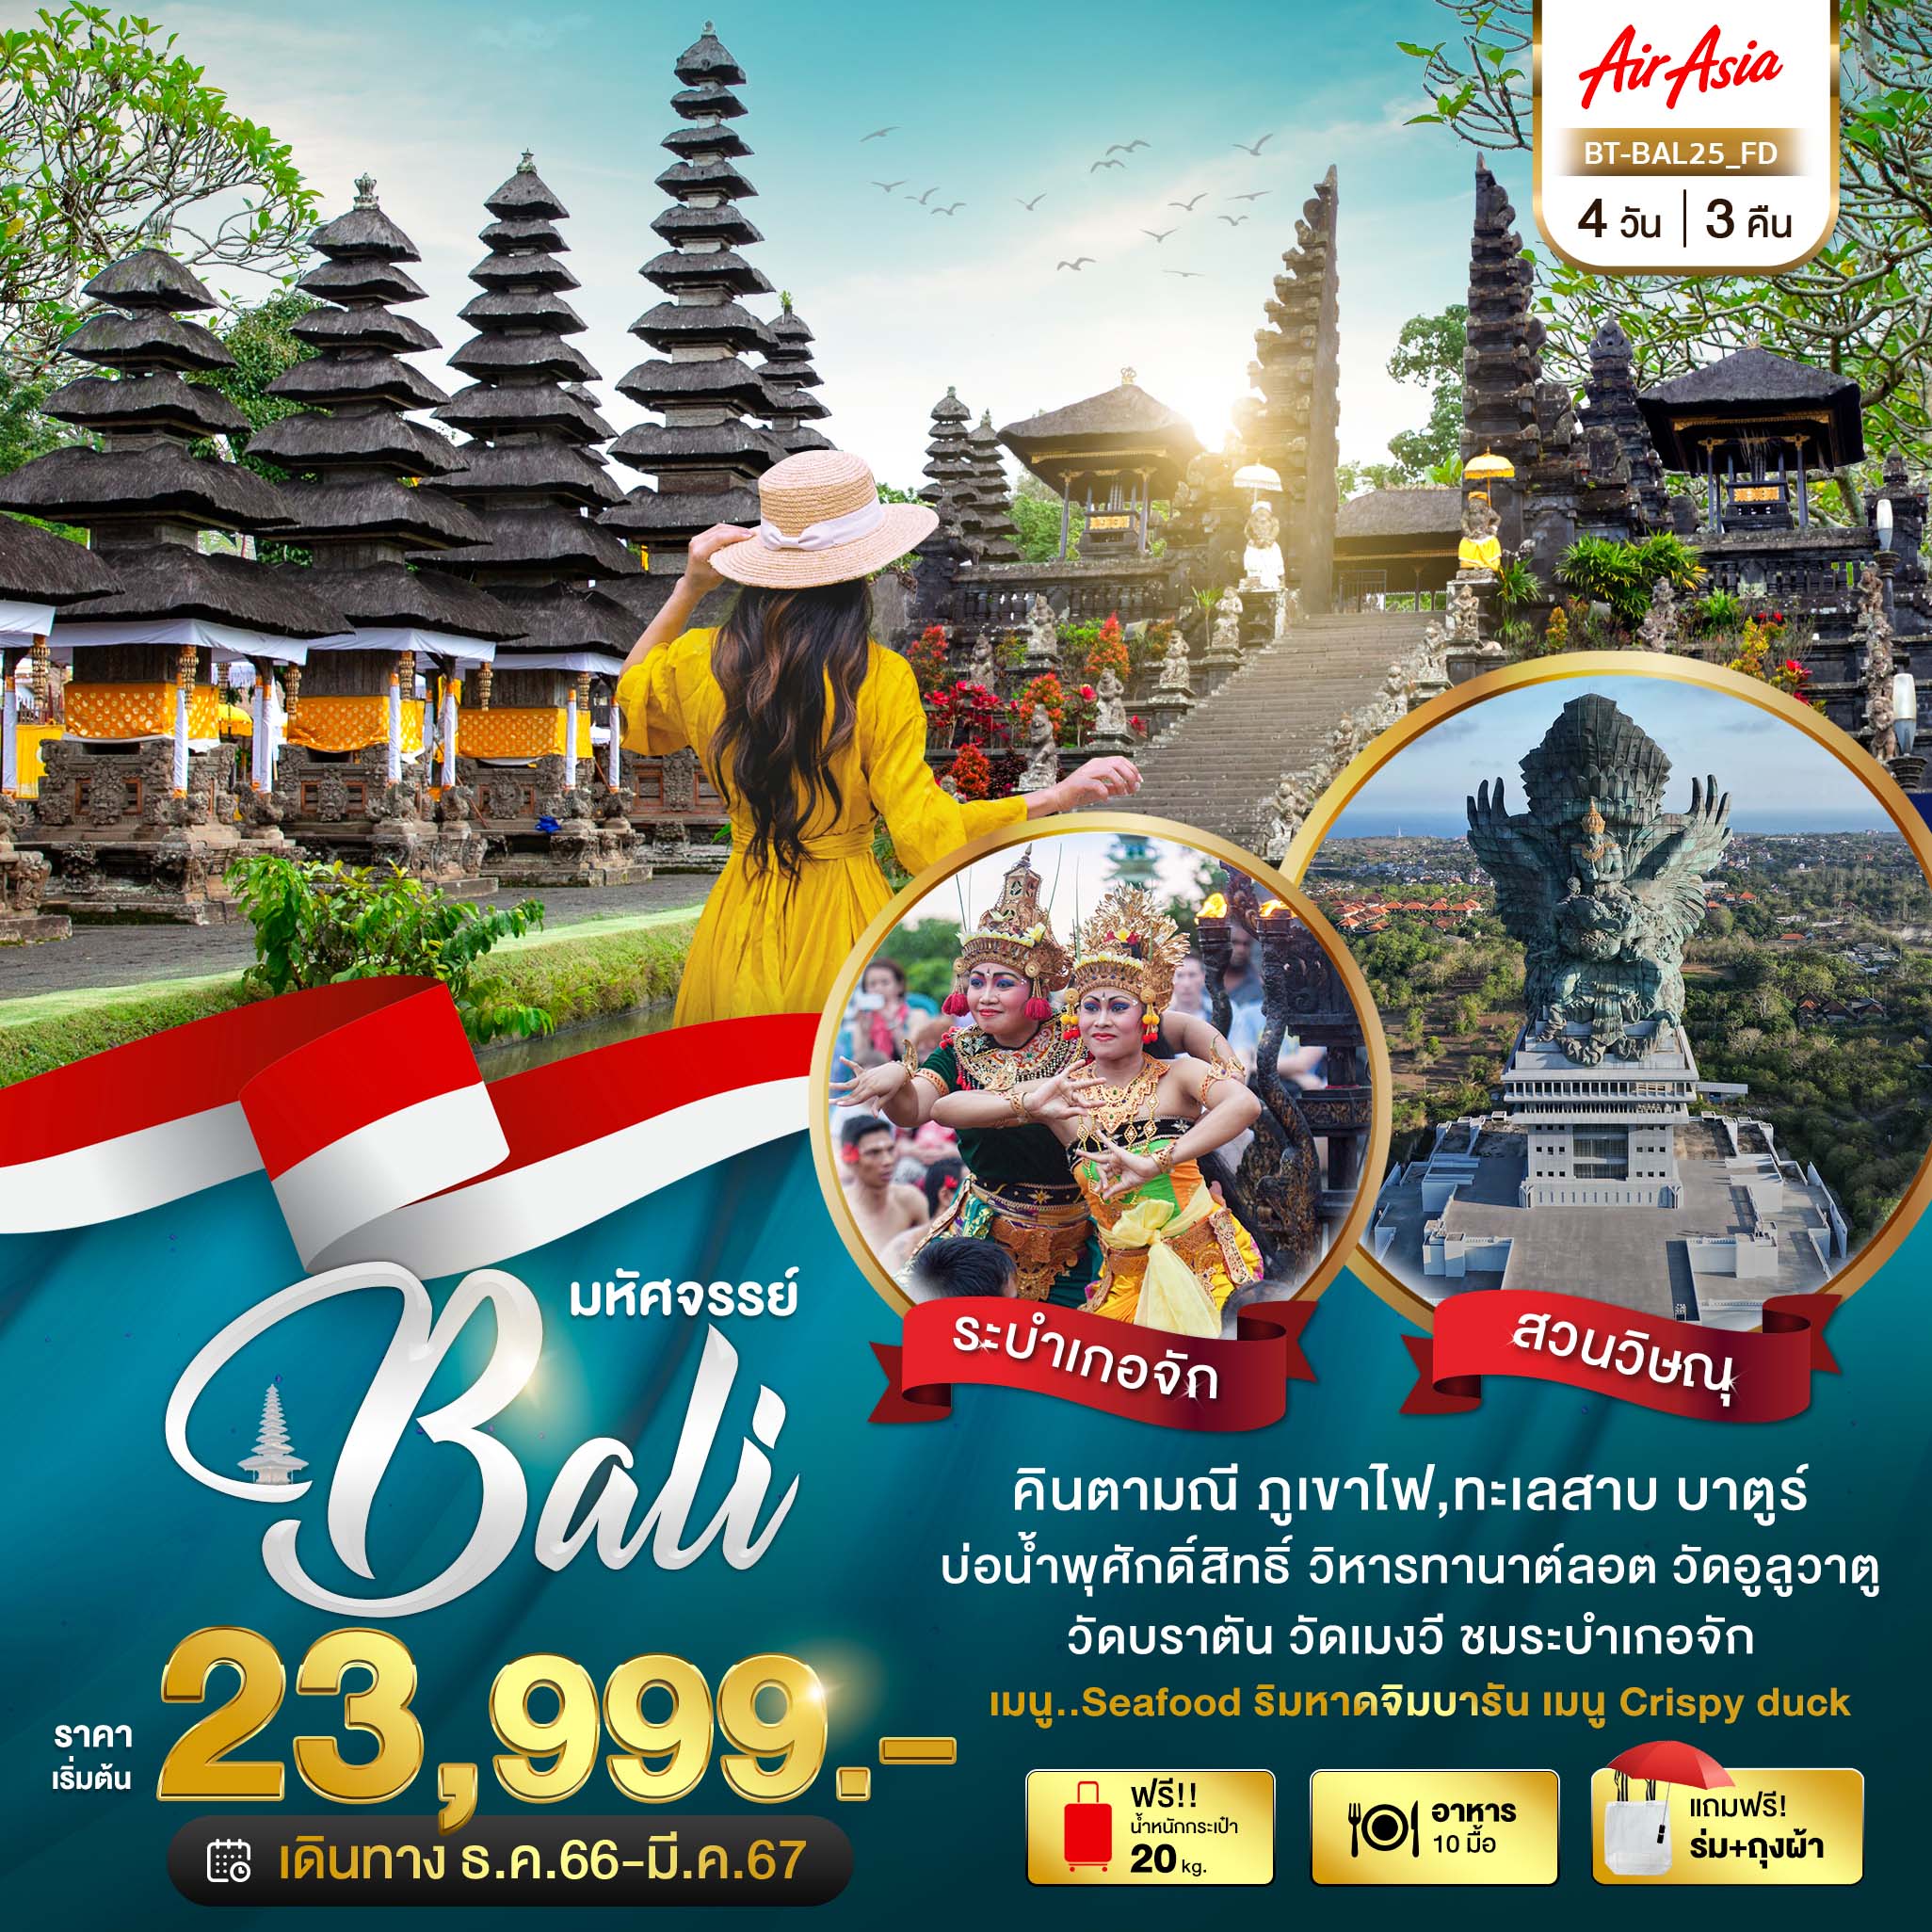 มหัศจรรย์ Bali 4D3N by FD (บาหลี)